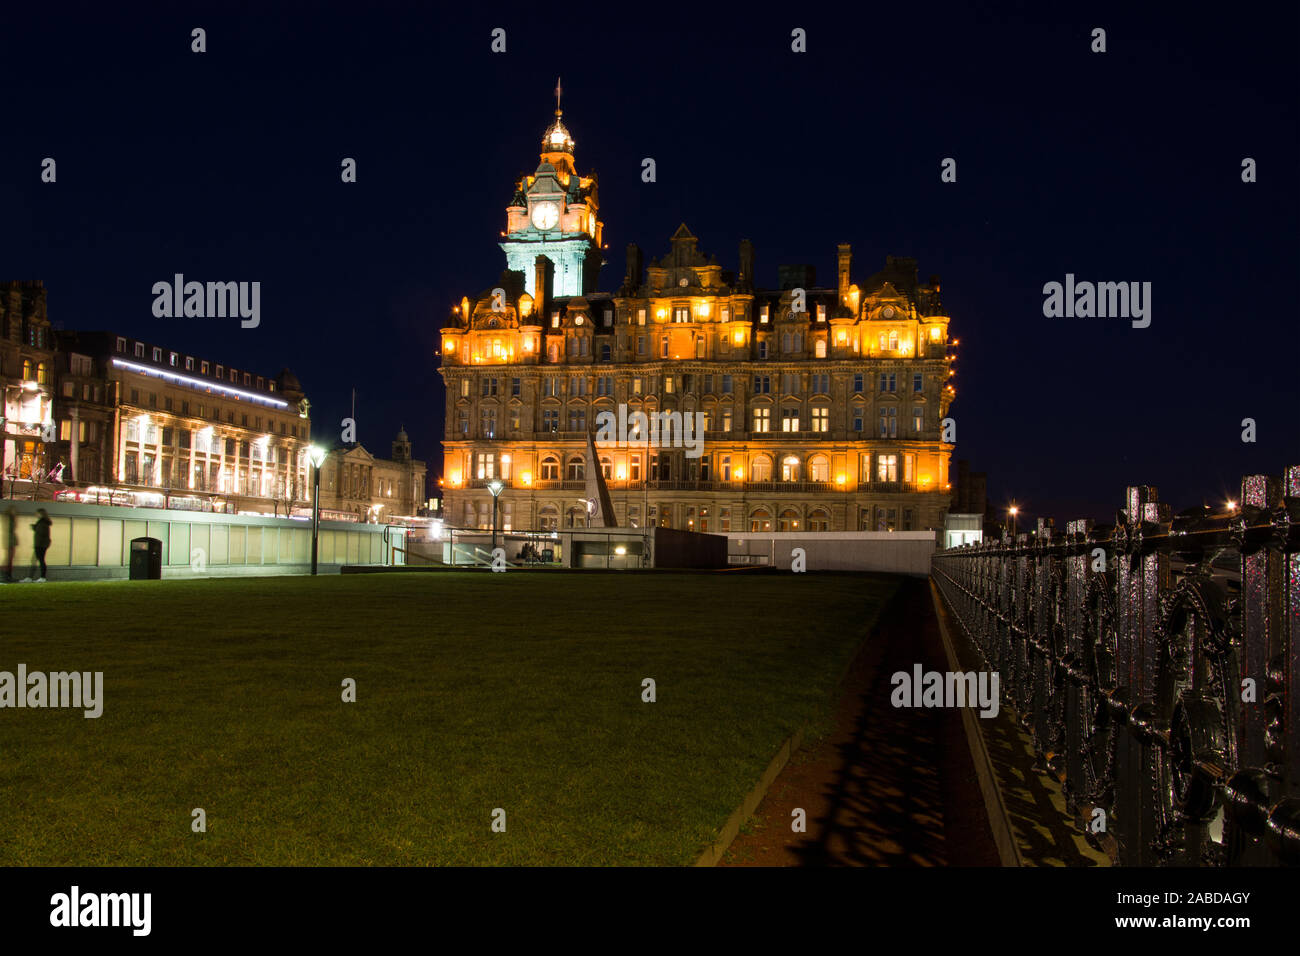 Nachtaufnahme von Edimburgo in Schottland, aufgenommen im Februar. Foto Stock